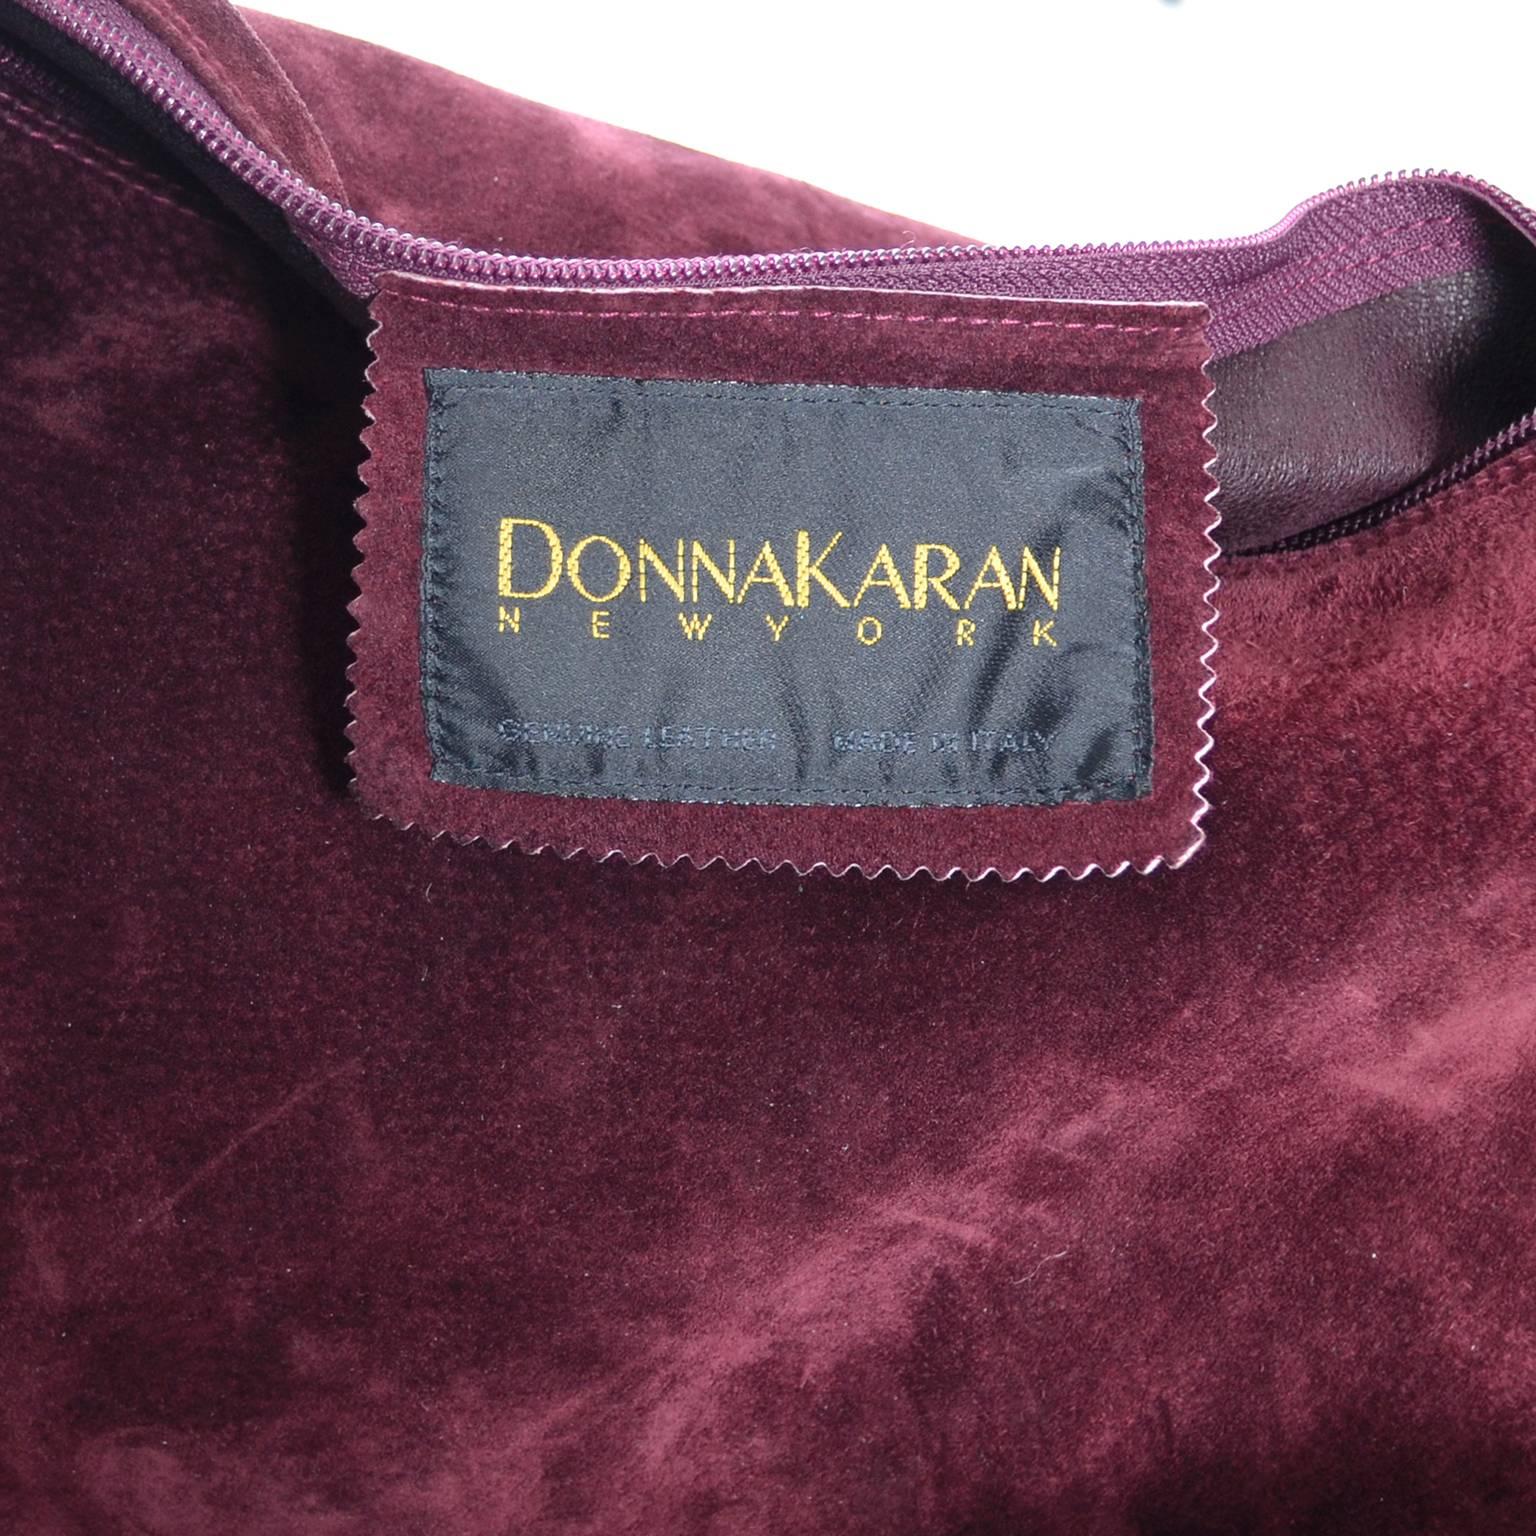 Donna Karan New York Vintage Handbag Suede Burgundy Large Bag 1